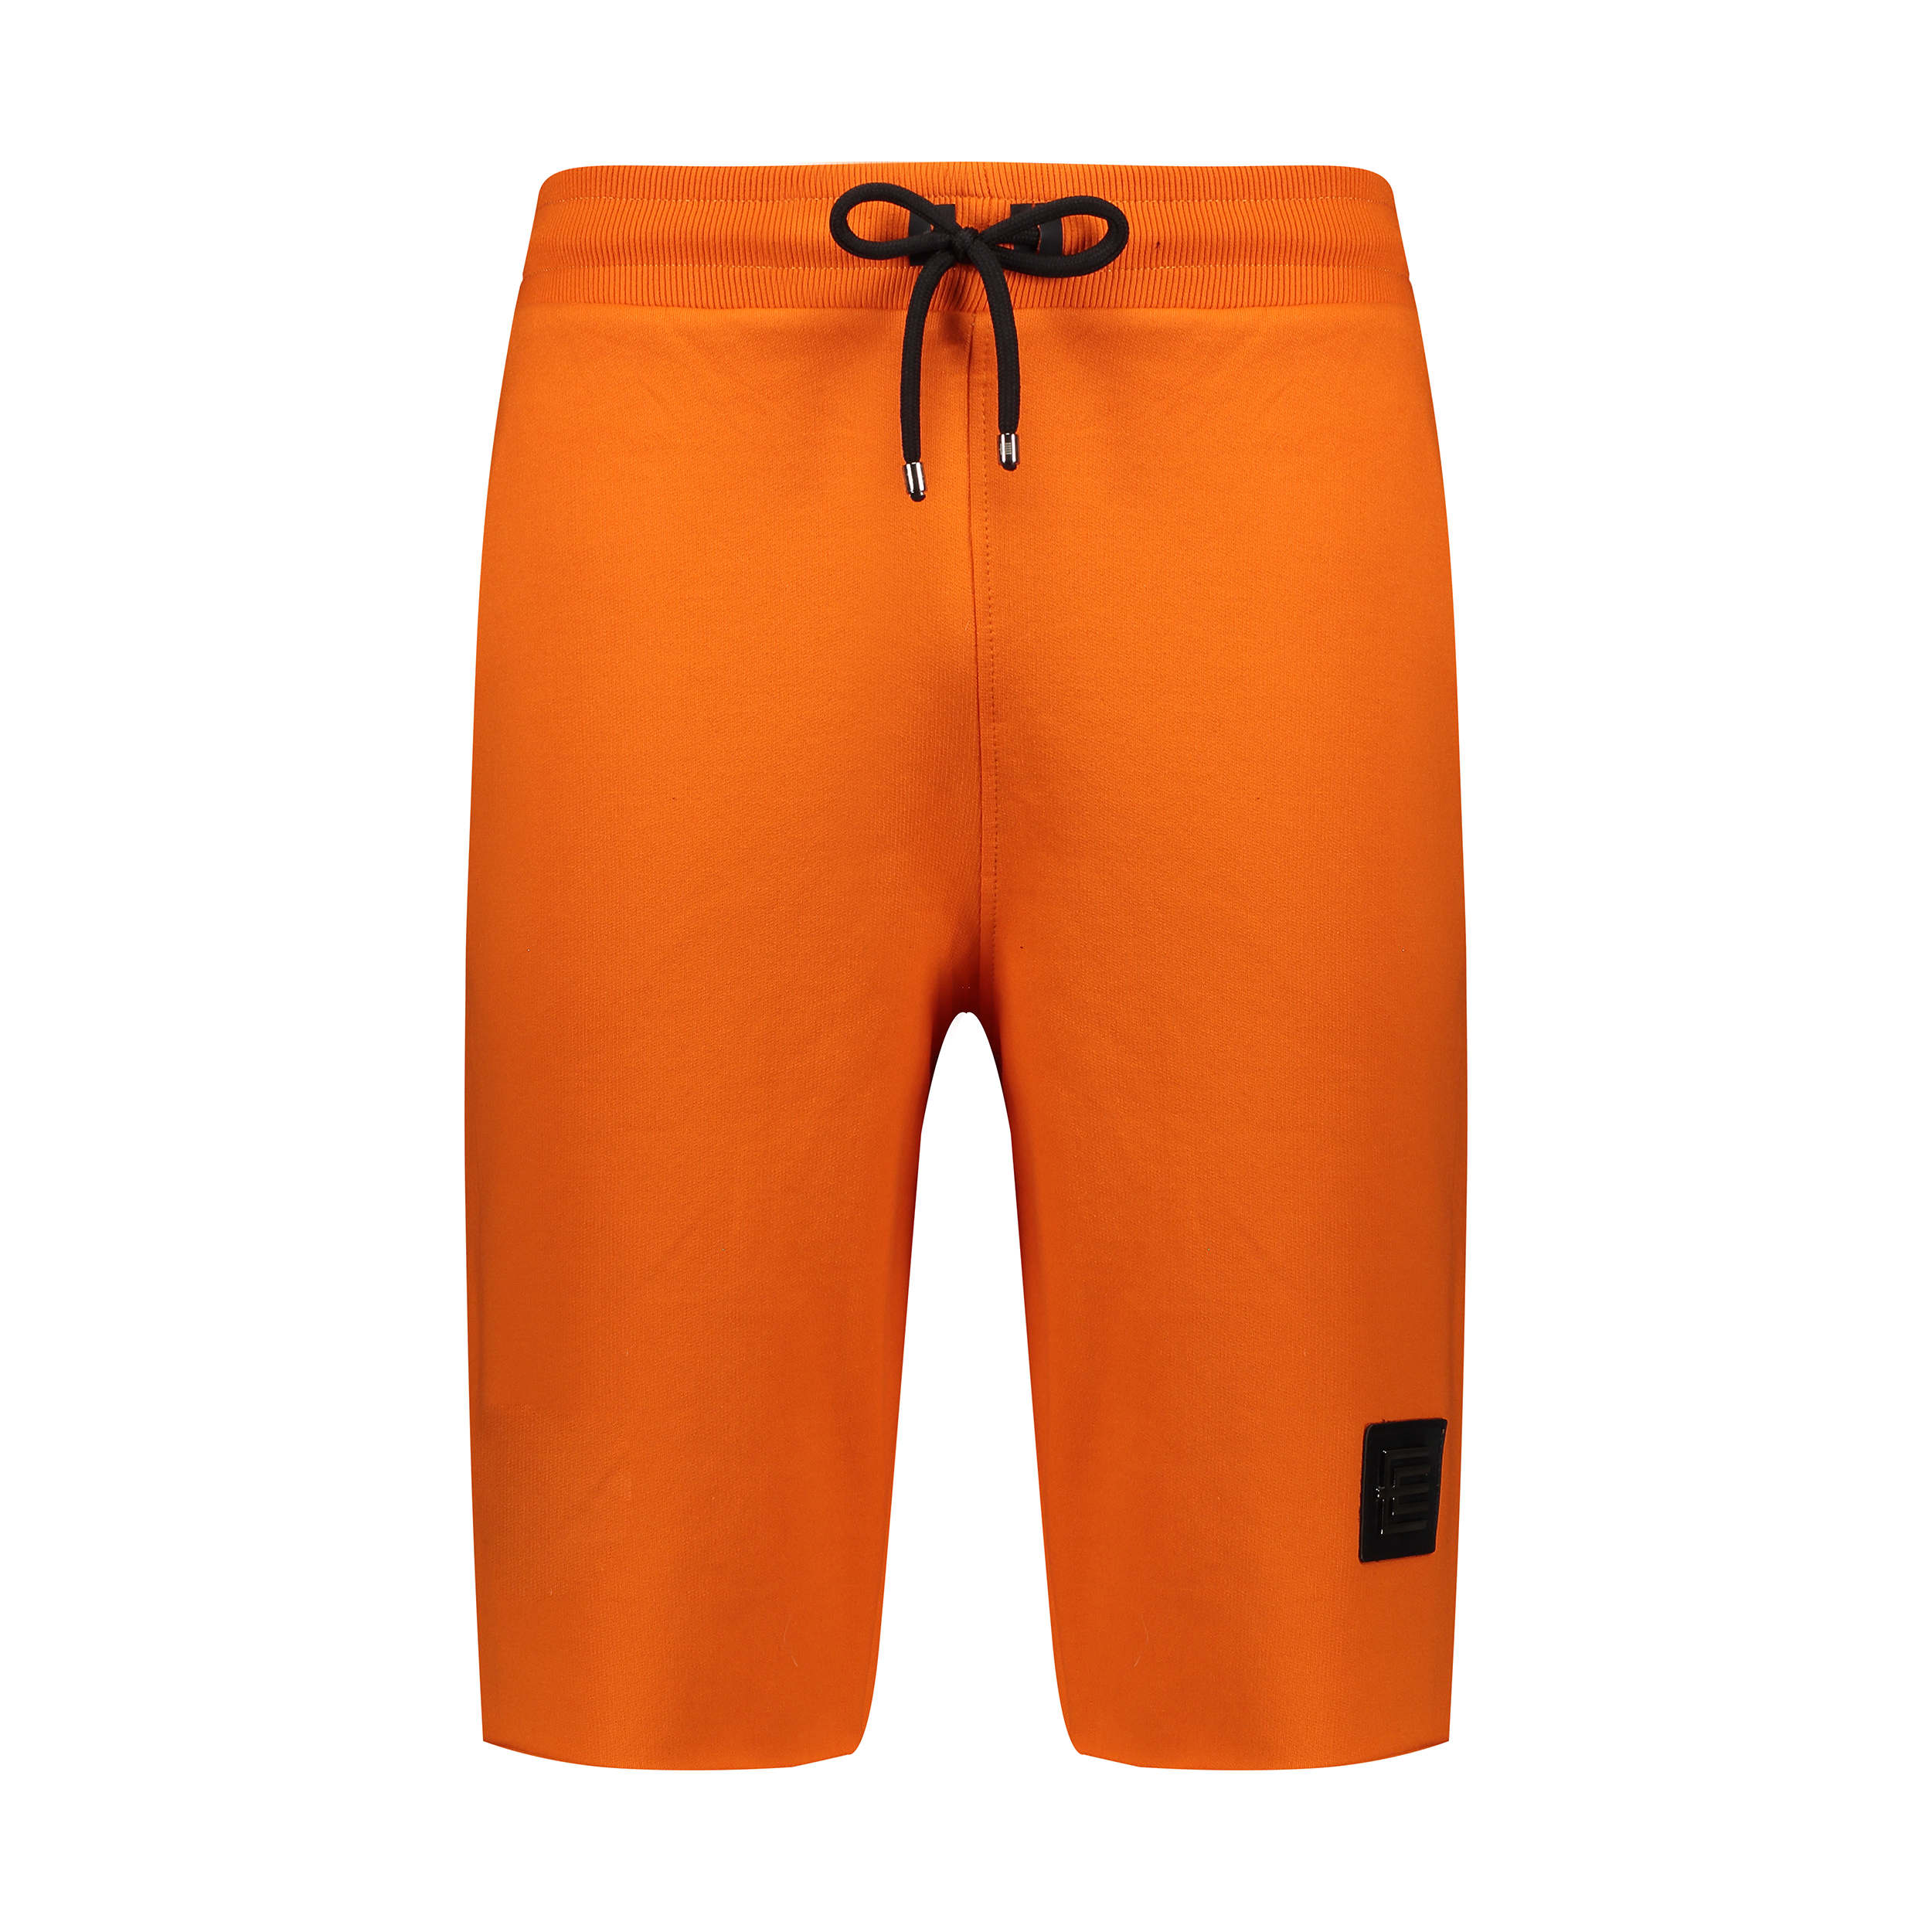 شلوارک مردانه ان سی نو مدل گوددی رنگ نارنجی